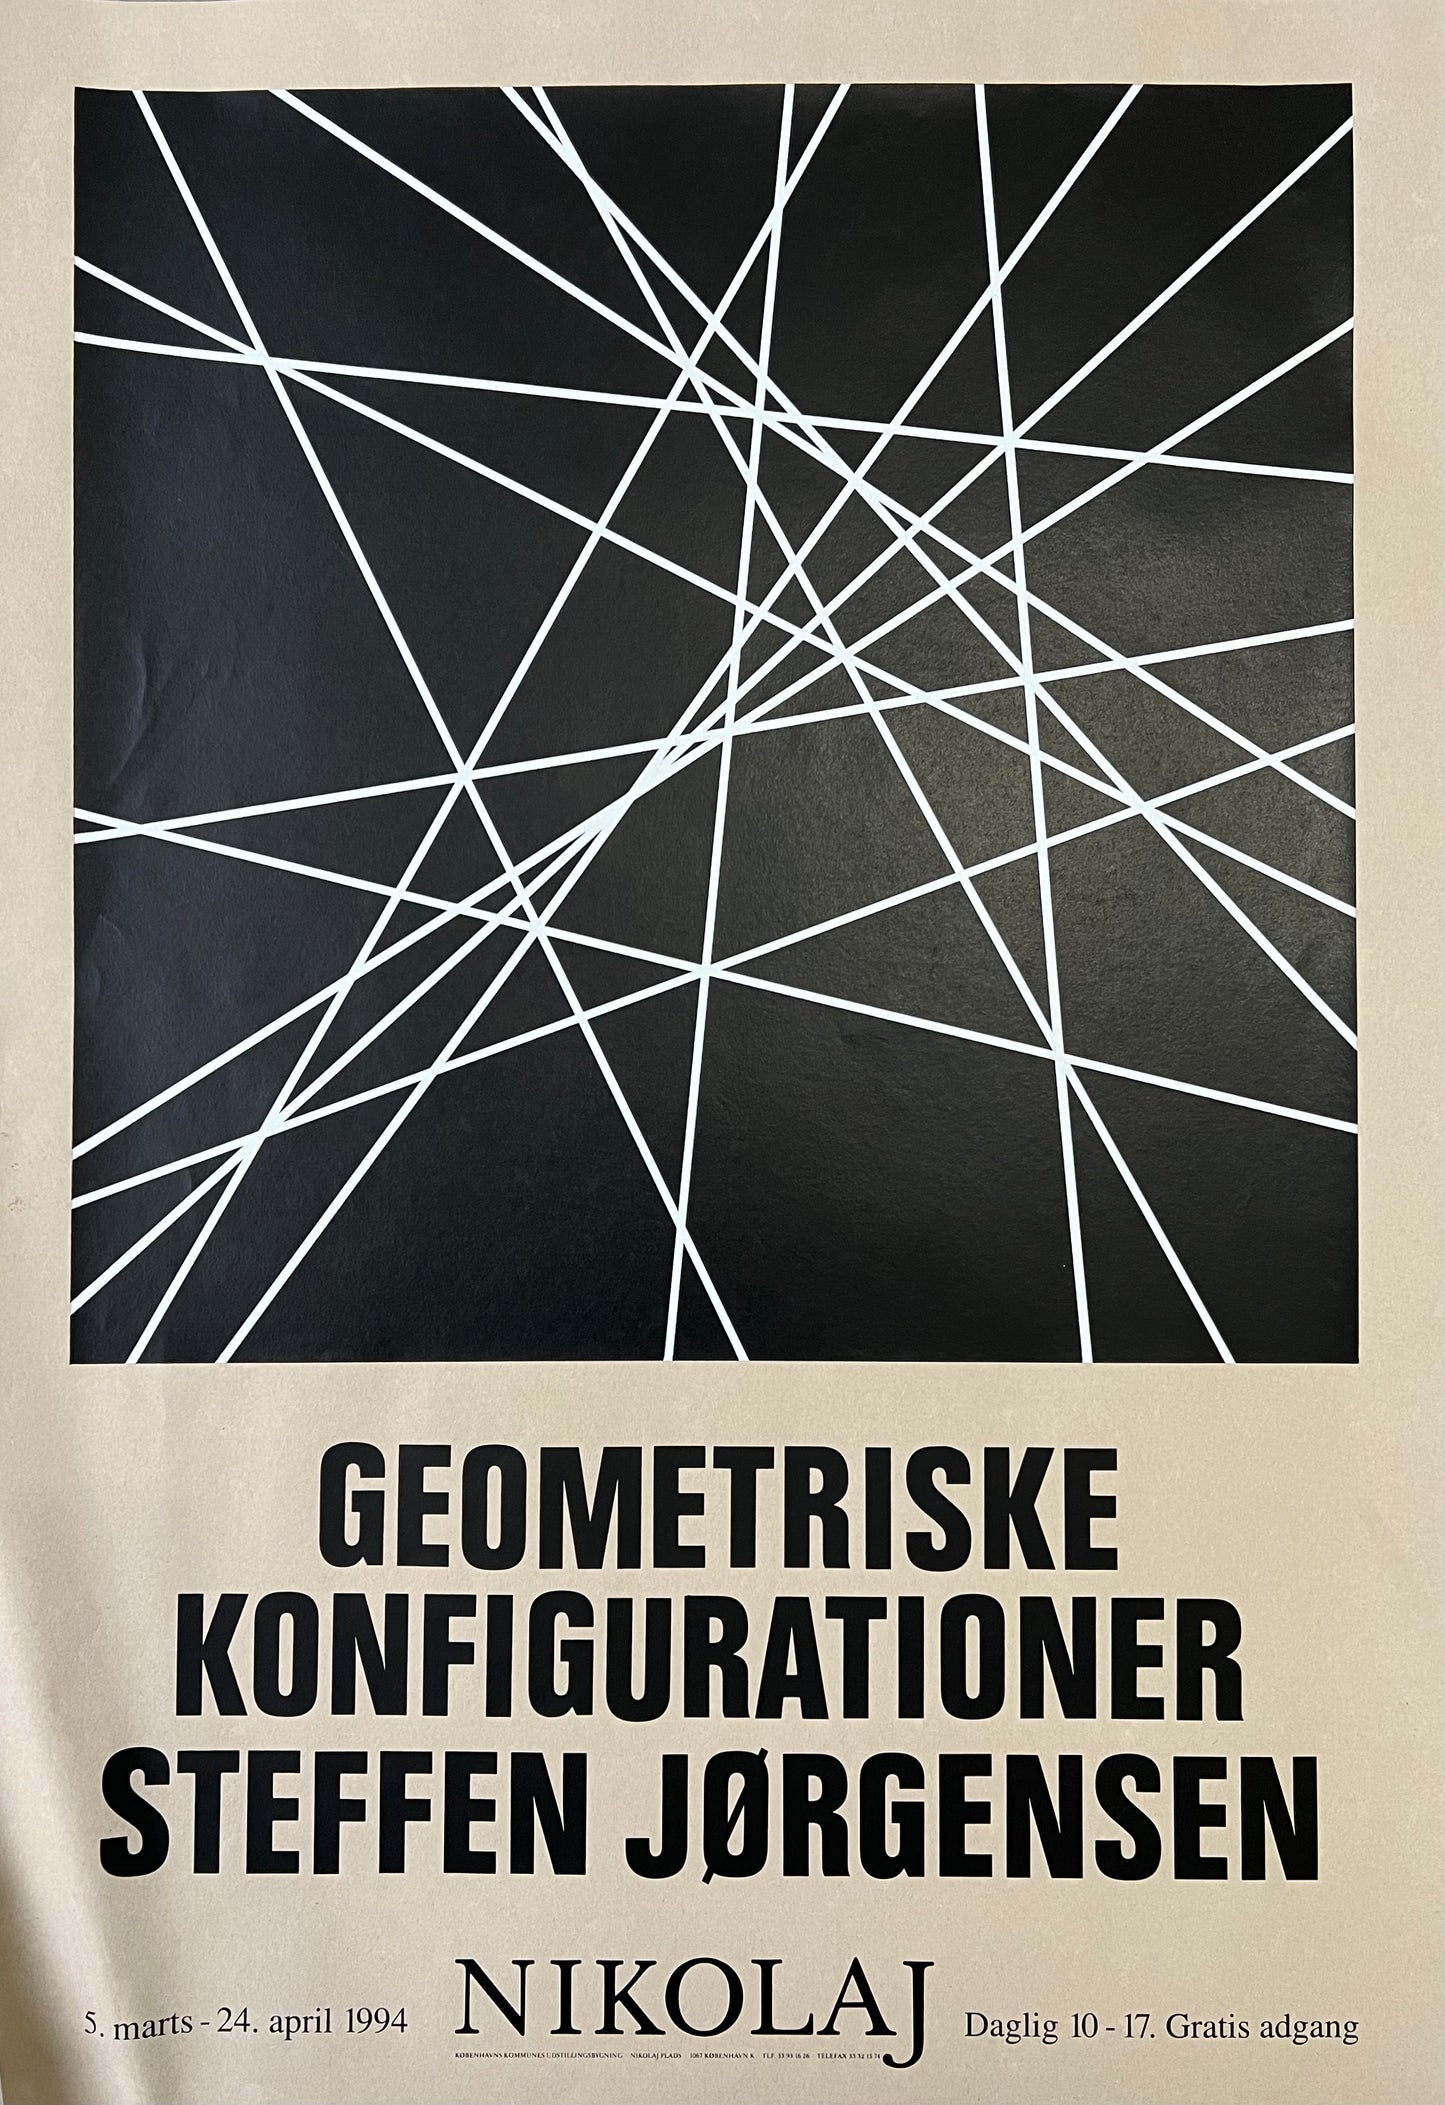 Steffen Jørgensen. Exhibition poster, 1994